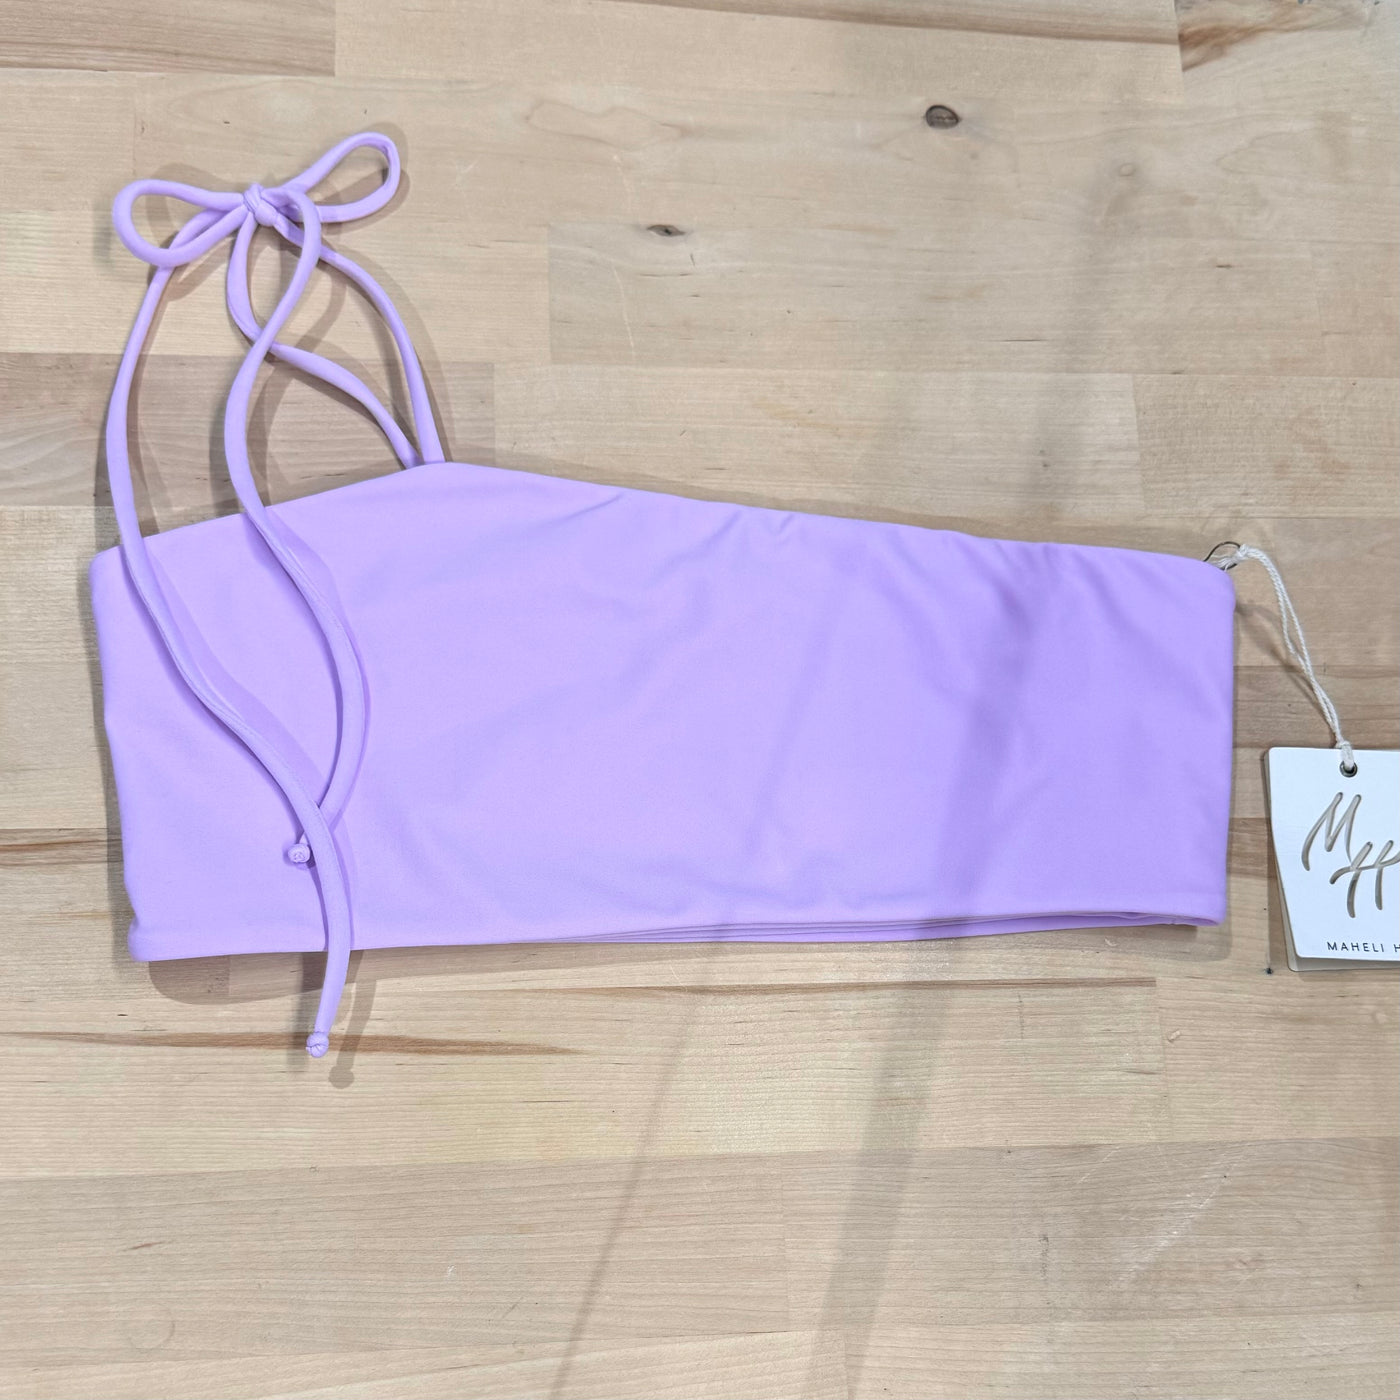 Mali Bikini Top in Lilac